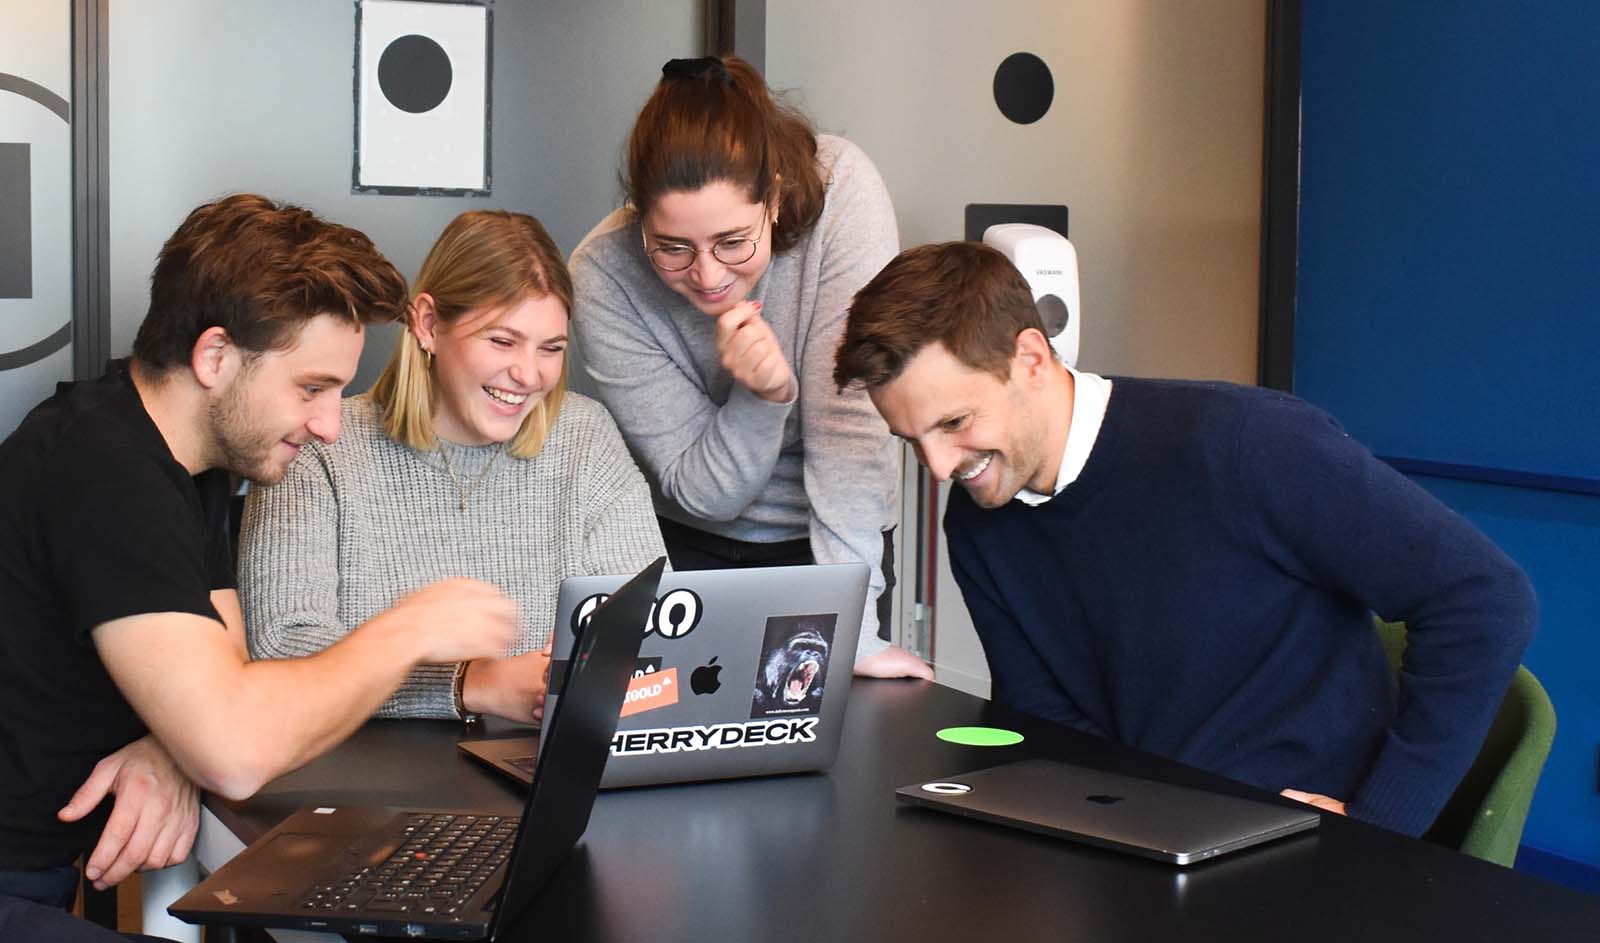 Kuvassa neljä nuorehkoa ihmistä katsomassa iloisena samaa kannettavaa tietokonetta.